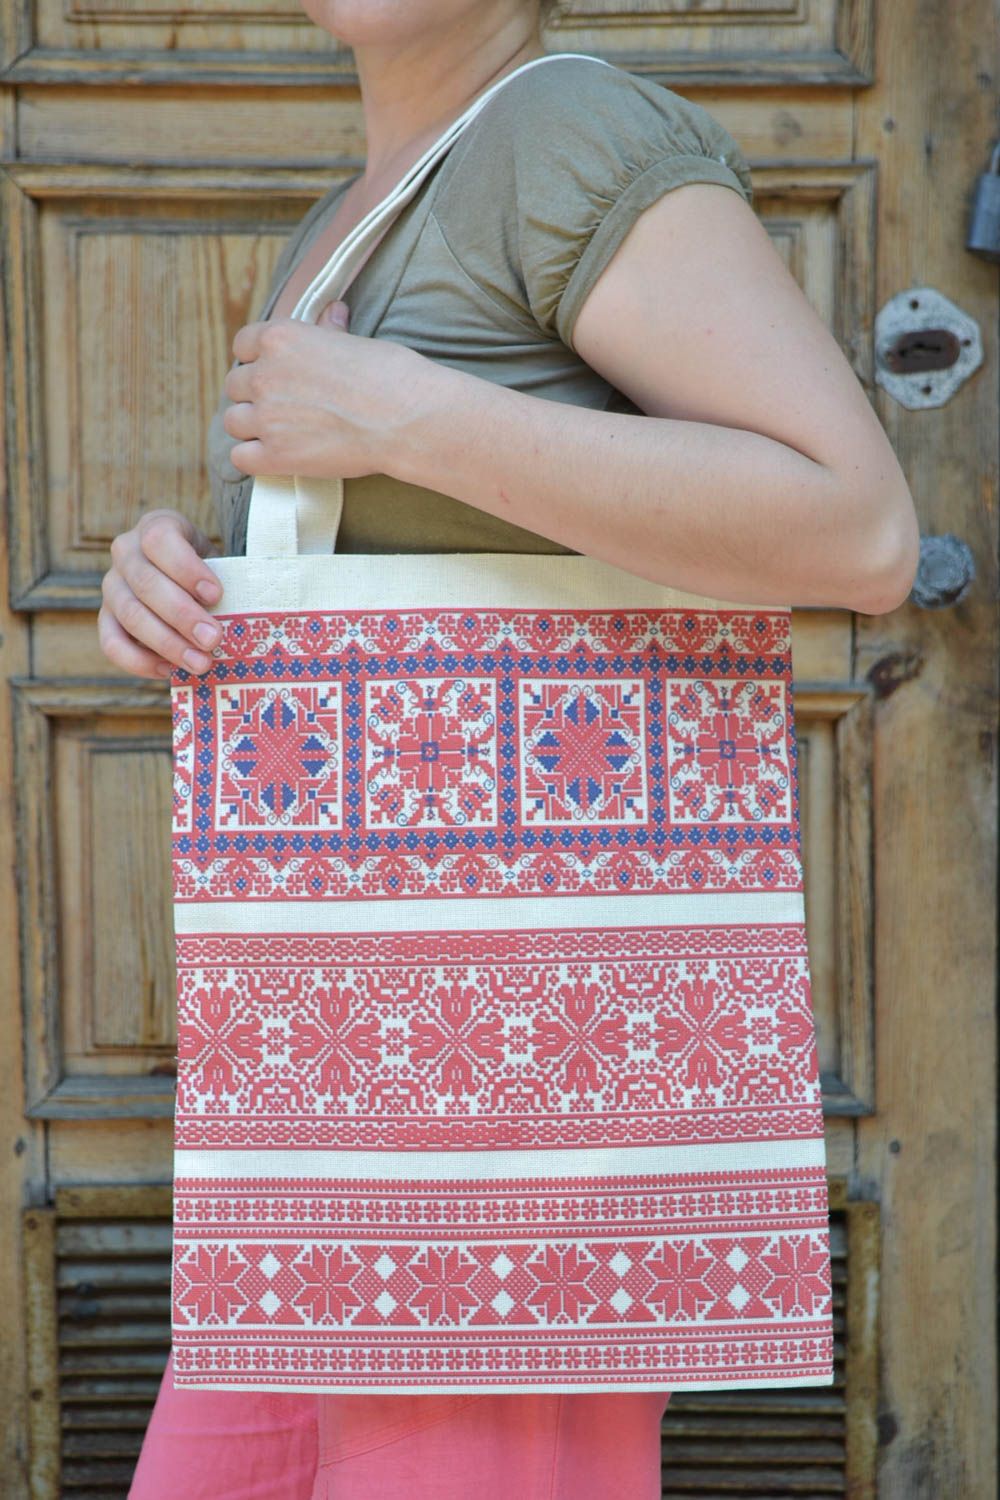 Женская сумка из ткани в эко-стиле большая с этническим рисунком ручной работы фото 1